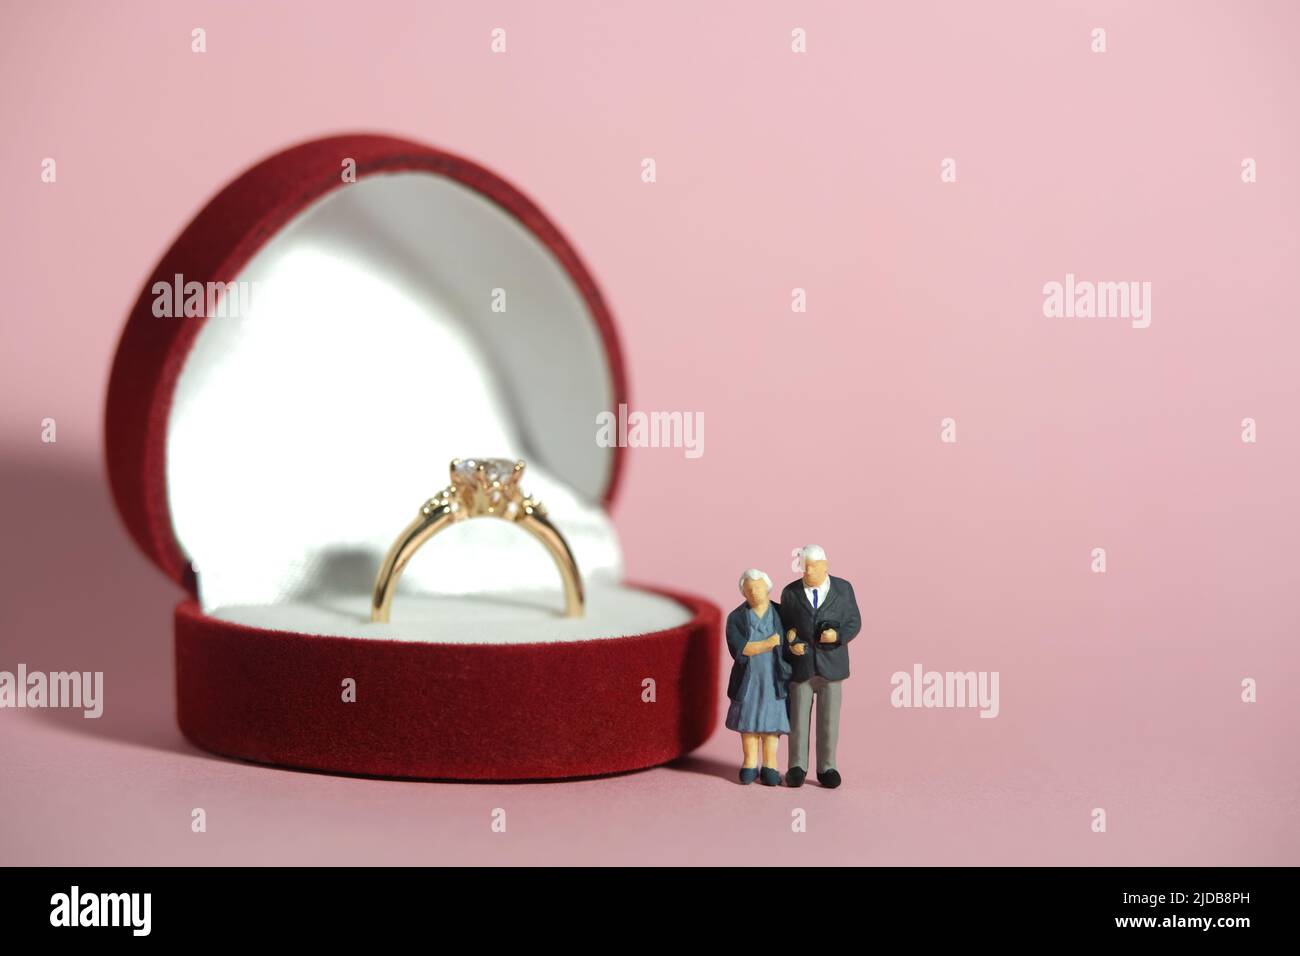 Miniatur Menschen Spielzeug konzeptuelle Fotografie. Ein älteres Paar, das vor dem roten Herzringkasten steht. Konzept für Hochzeit, Hochzeitstag. Bild pho Stockfoto